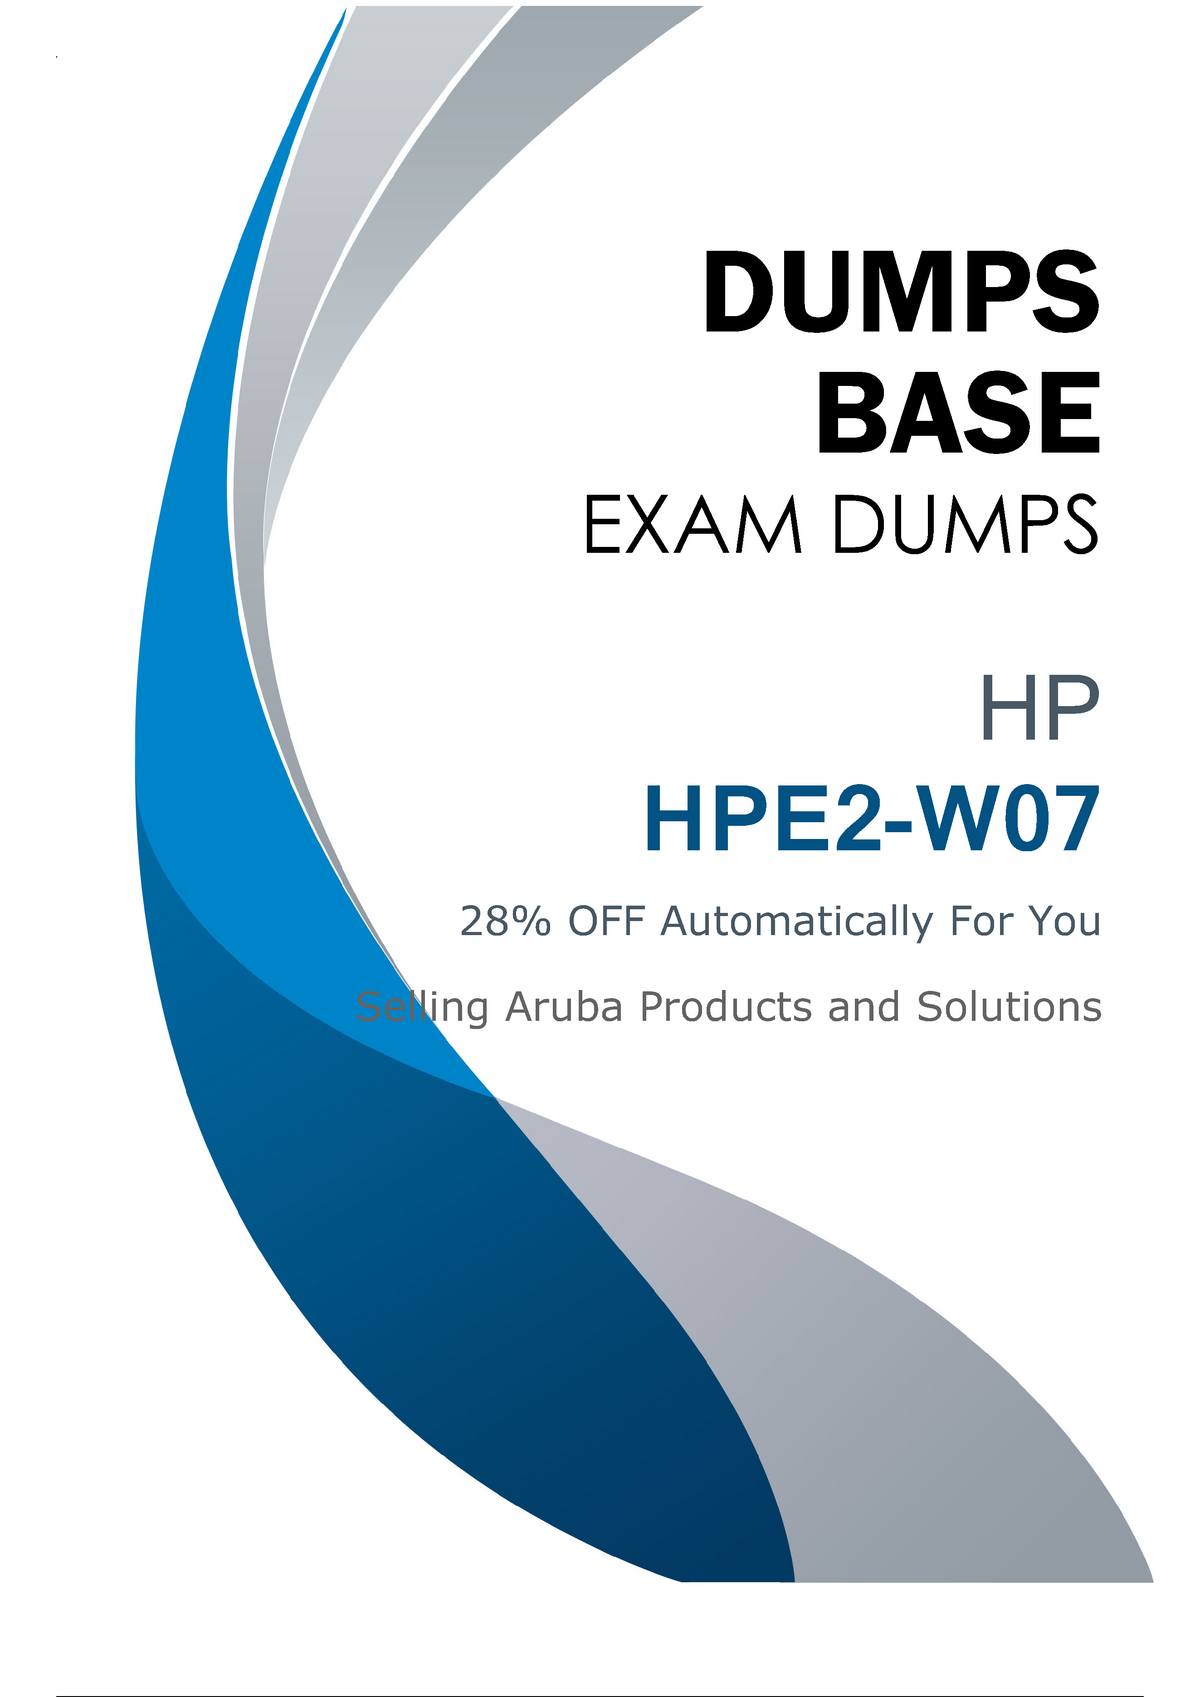 HPE2-W07 Pruefungssimulationen